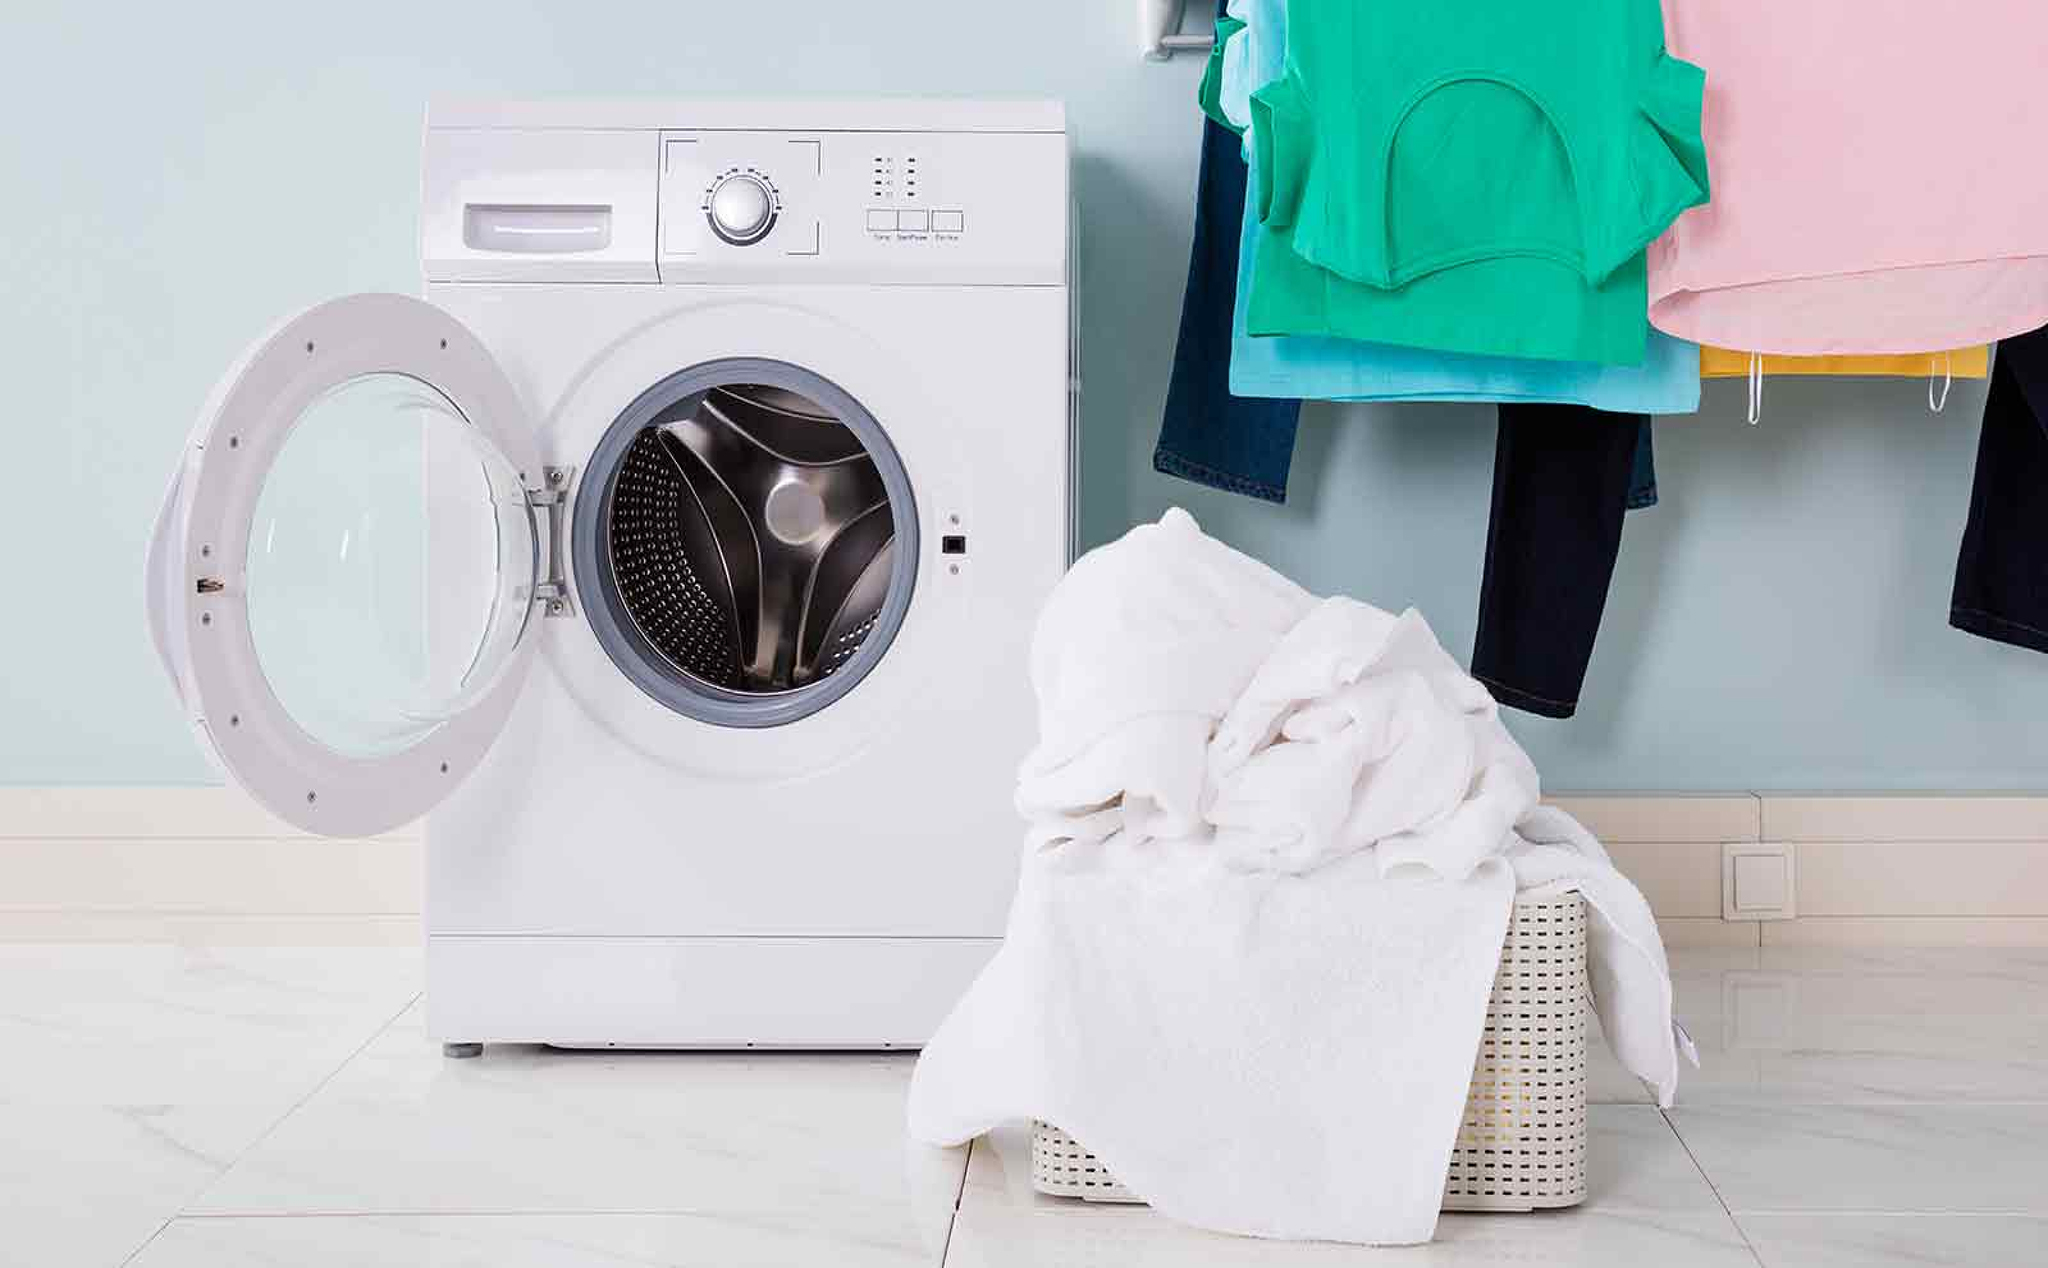 Nếu không vệ sinh máy giặt thường xuyên, máy giặt rất nhanh bị hỏng